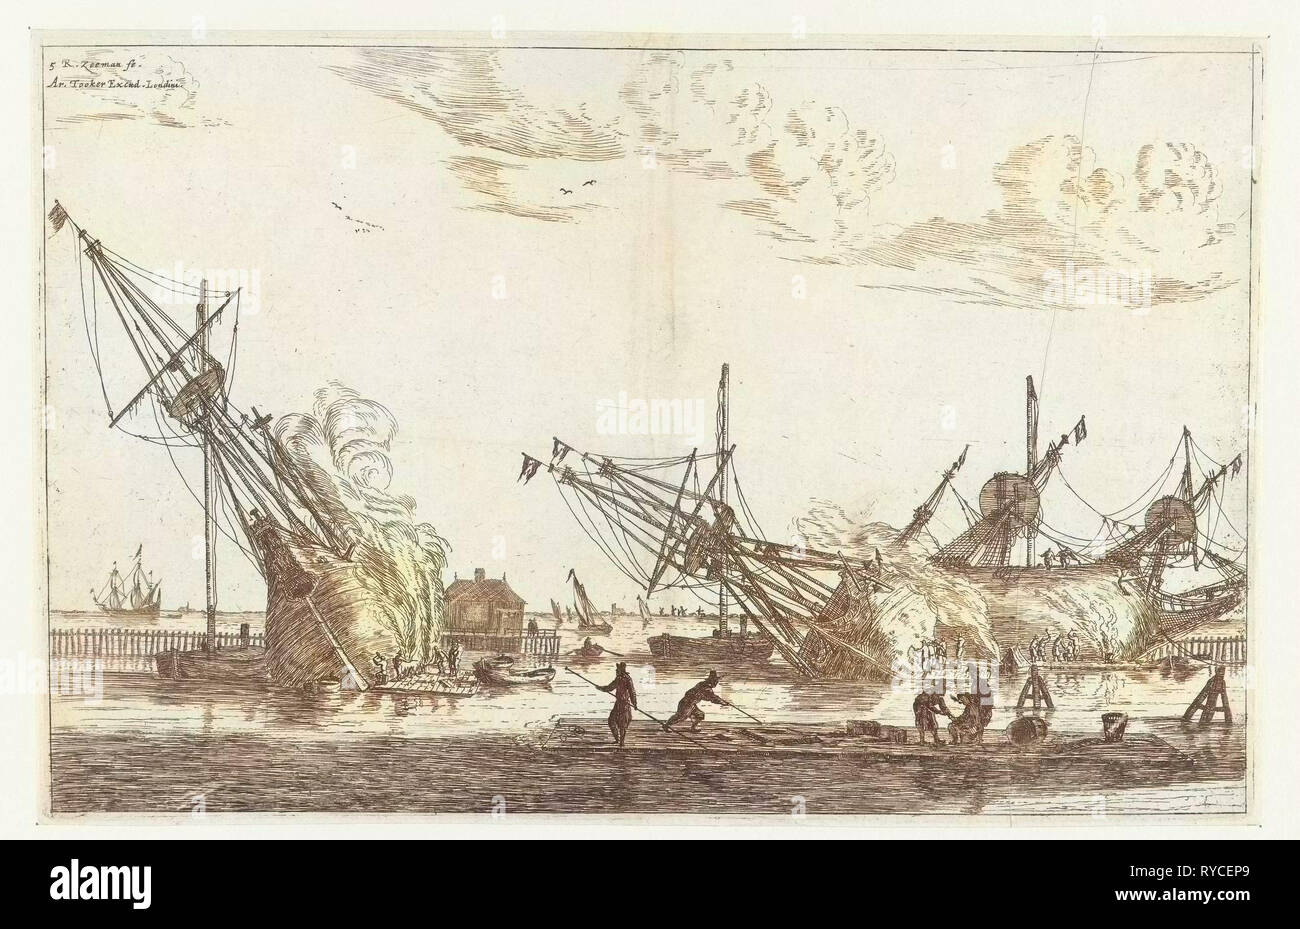 L'étanchéité de la coque des trois flûtes, Reinier Nooms, 1650-1675, une flûte le, fluit ou flûte est un type de navire à voile à l'origine conçu comme un navire de fret Banque D'Images